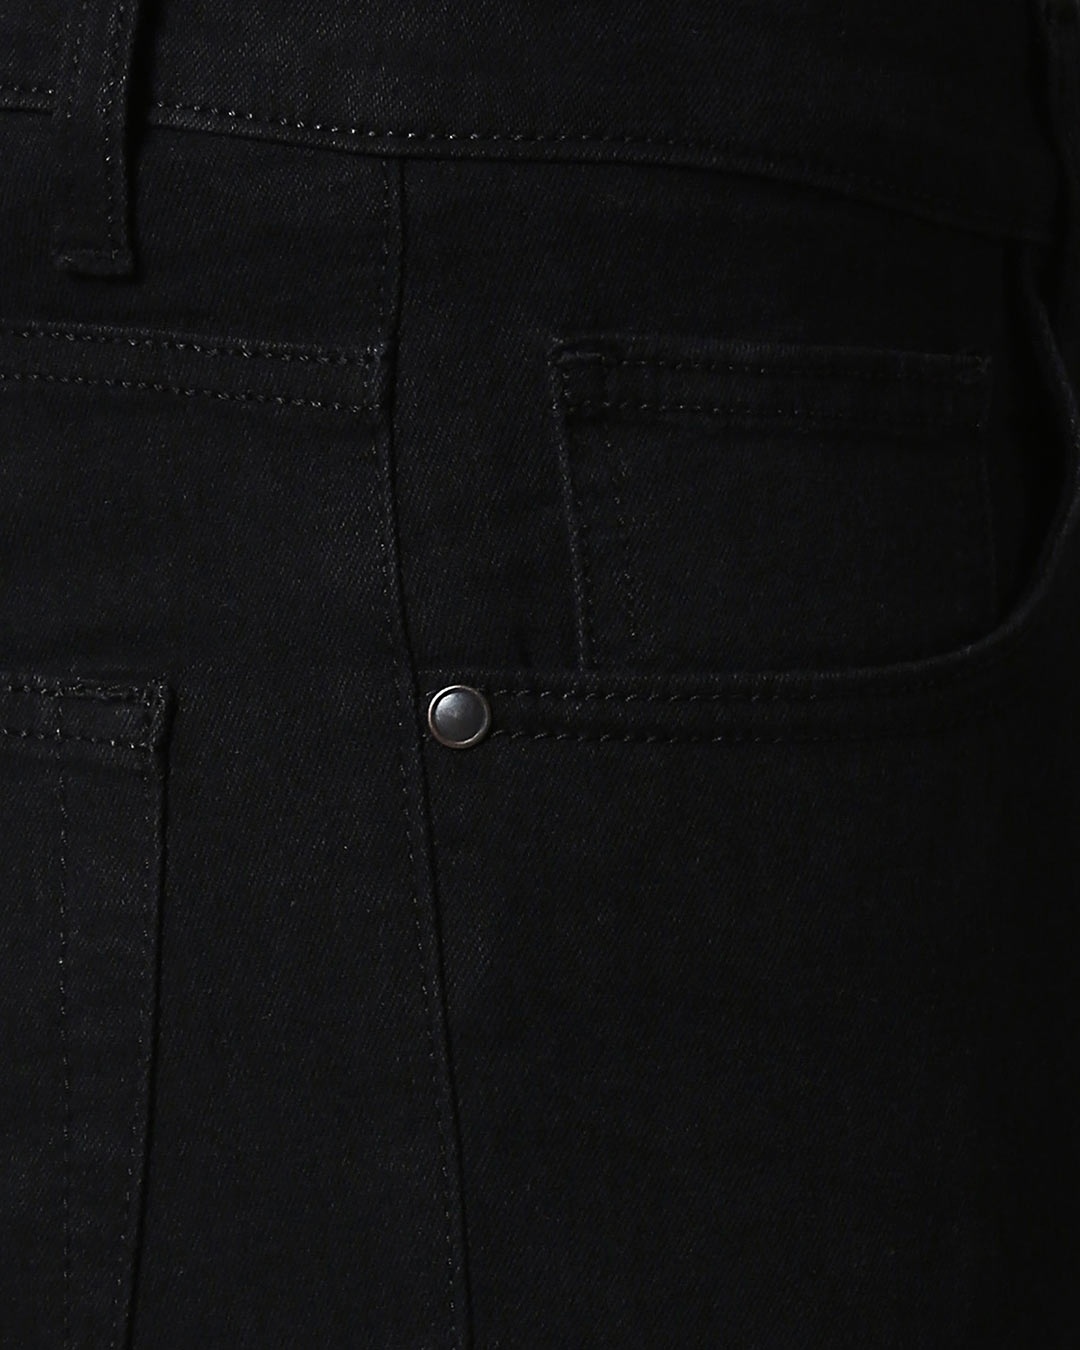 Buy Ink Black Mid Rise Stretchable Men's Jeans for Men black Online at ...